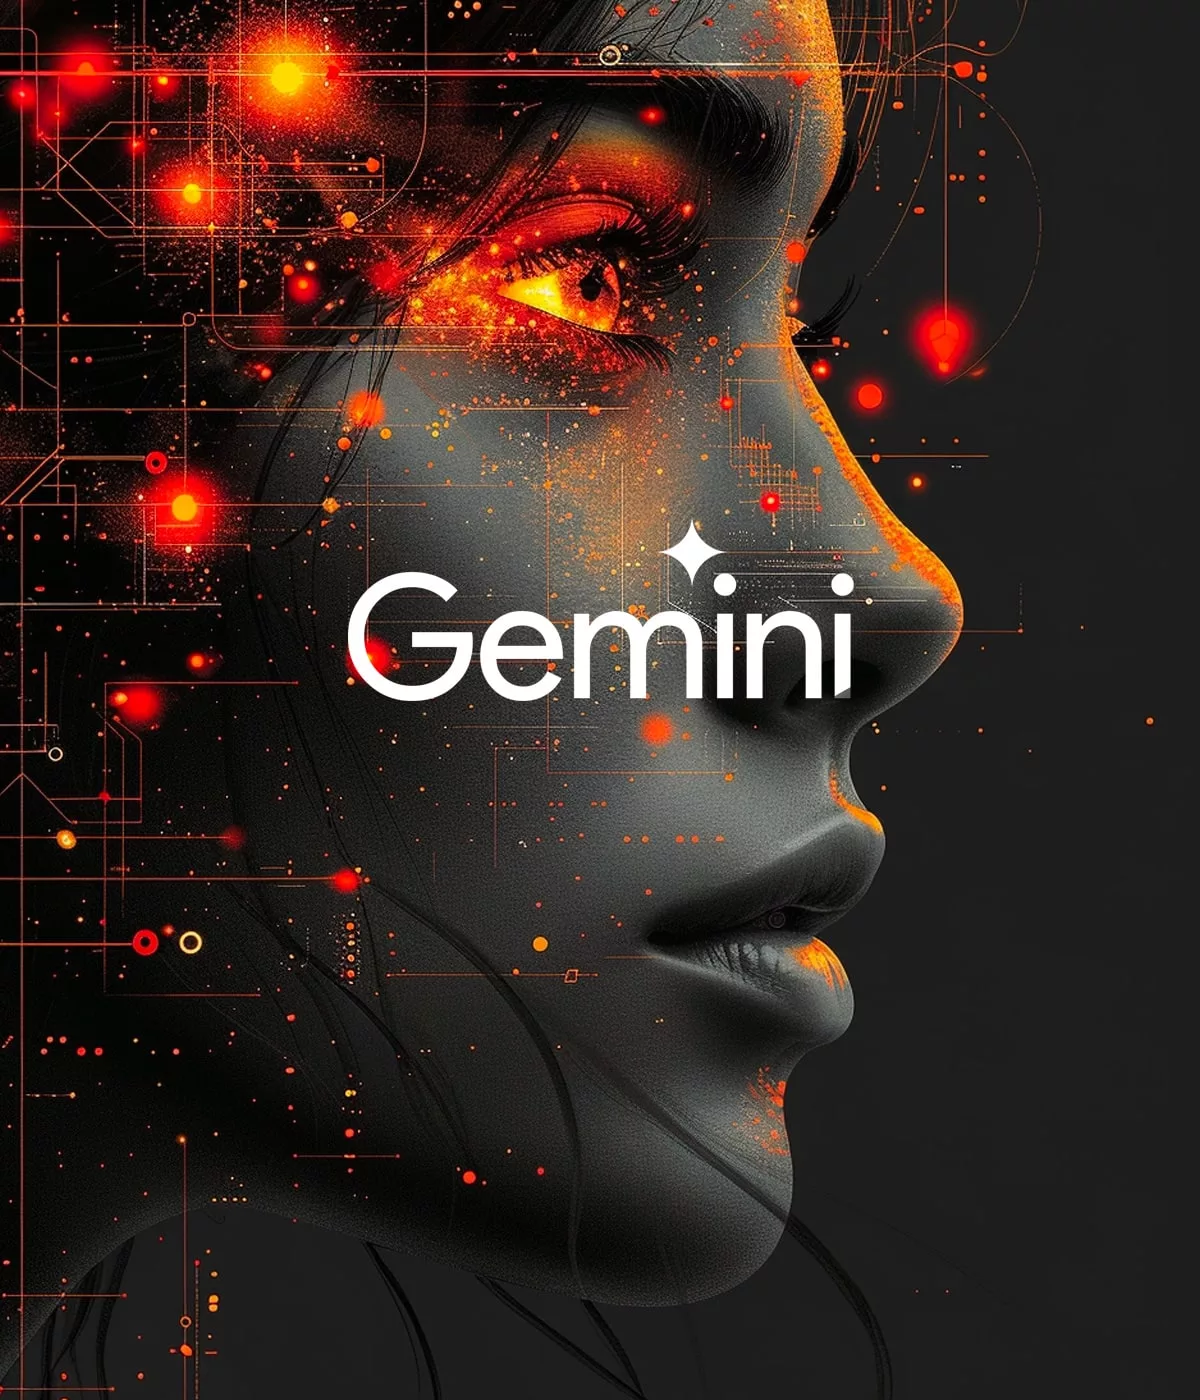 Visage féminin futuriste avec inscription "Gemini".